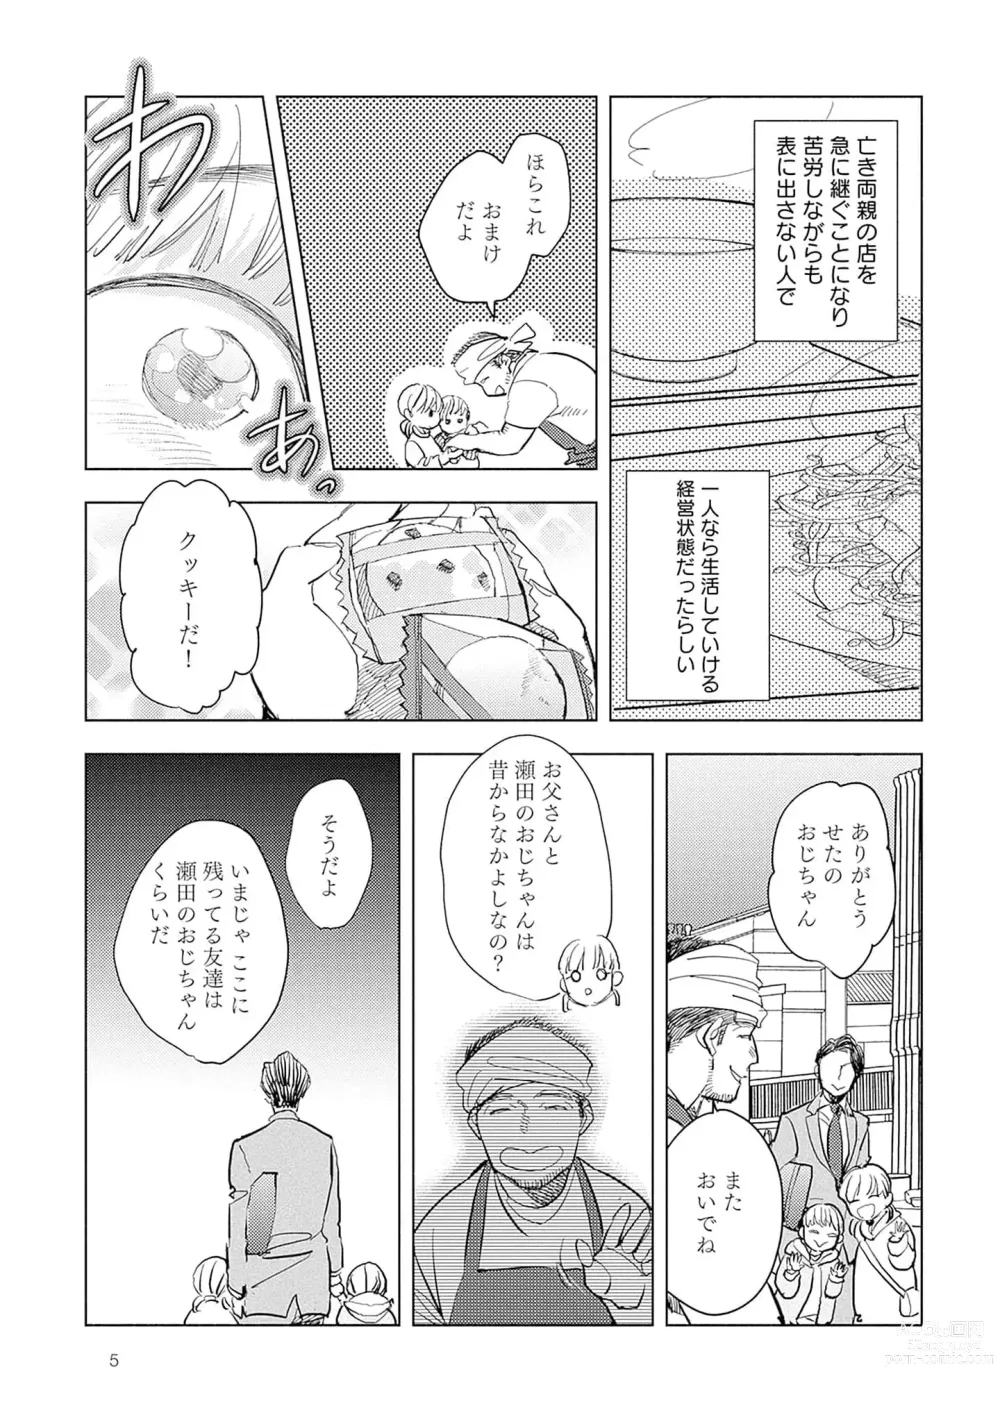 Page 7 of manga Strawberry na Days 2